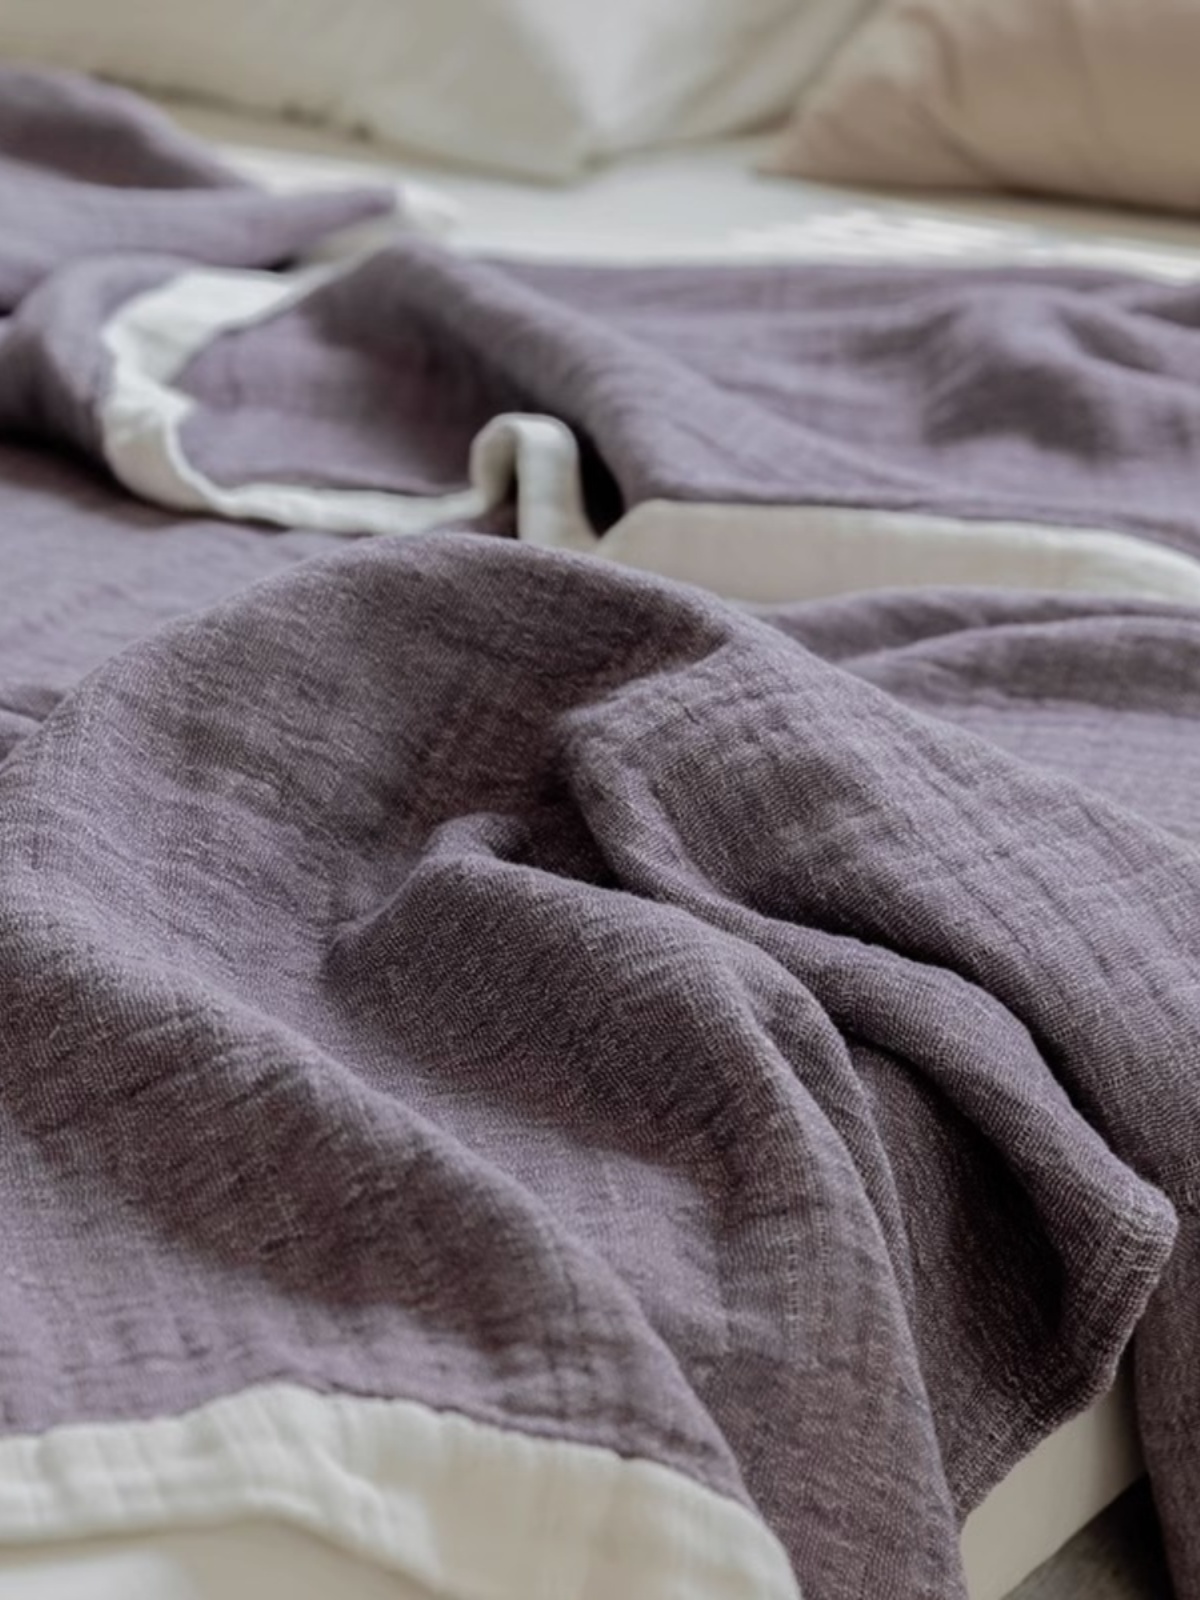 紗布毛巾毯雙層紗蓋毯薄款純棉沙發巾午休毯簡約現代風格